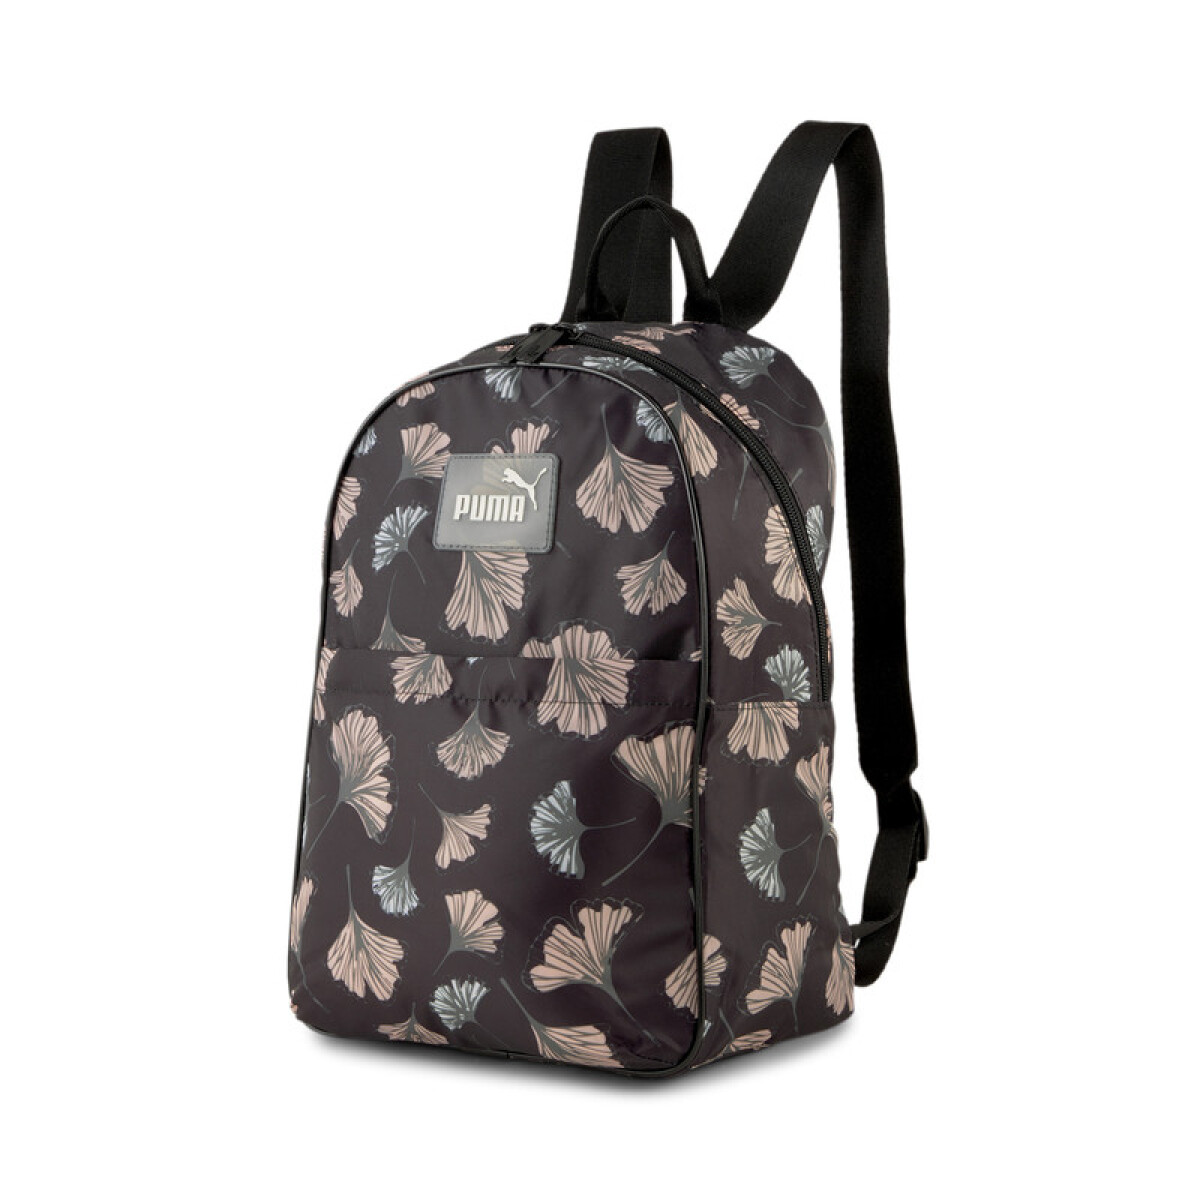 Core Pop Backpack 07831002 - Neg/rosa 